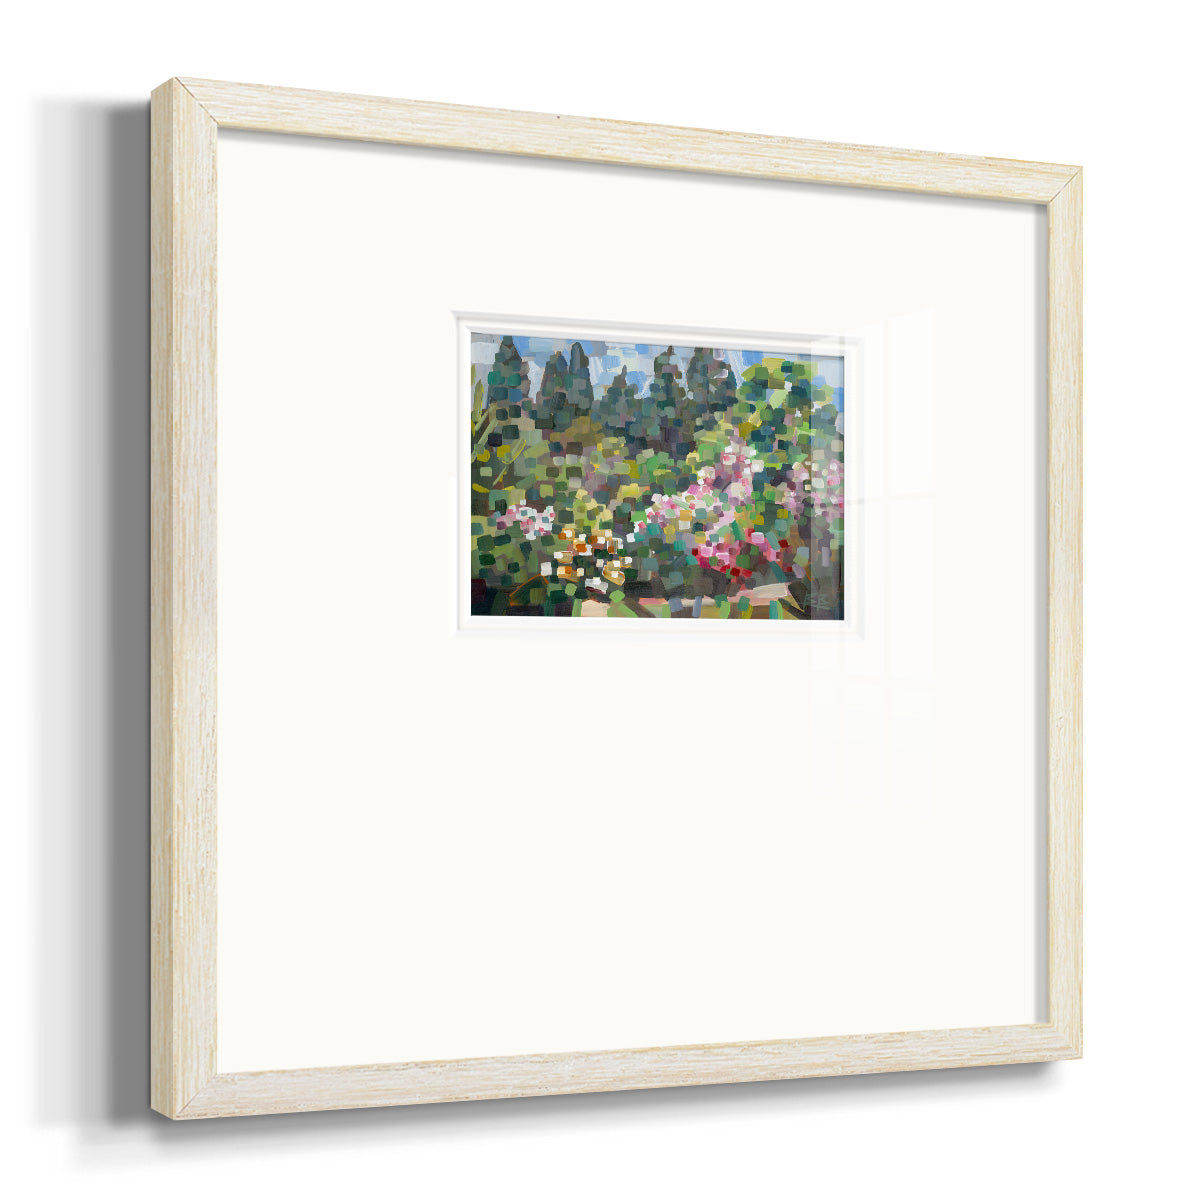 Arboretum in Spring- Premium Framed Print Double Matboard